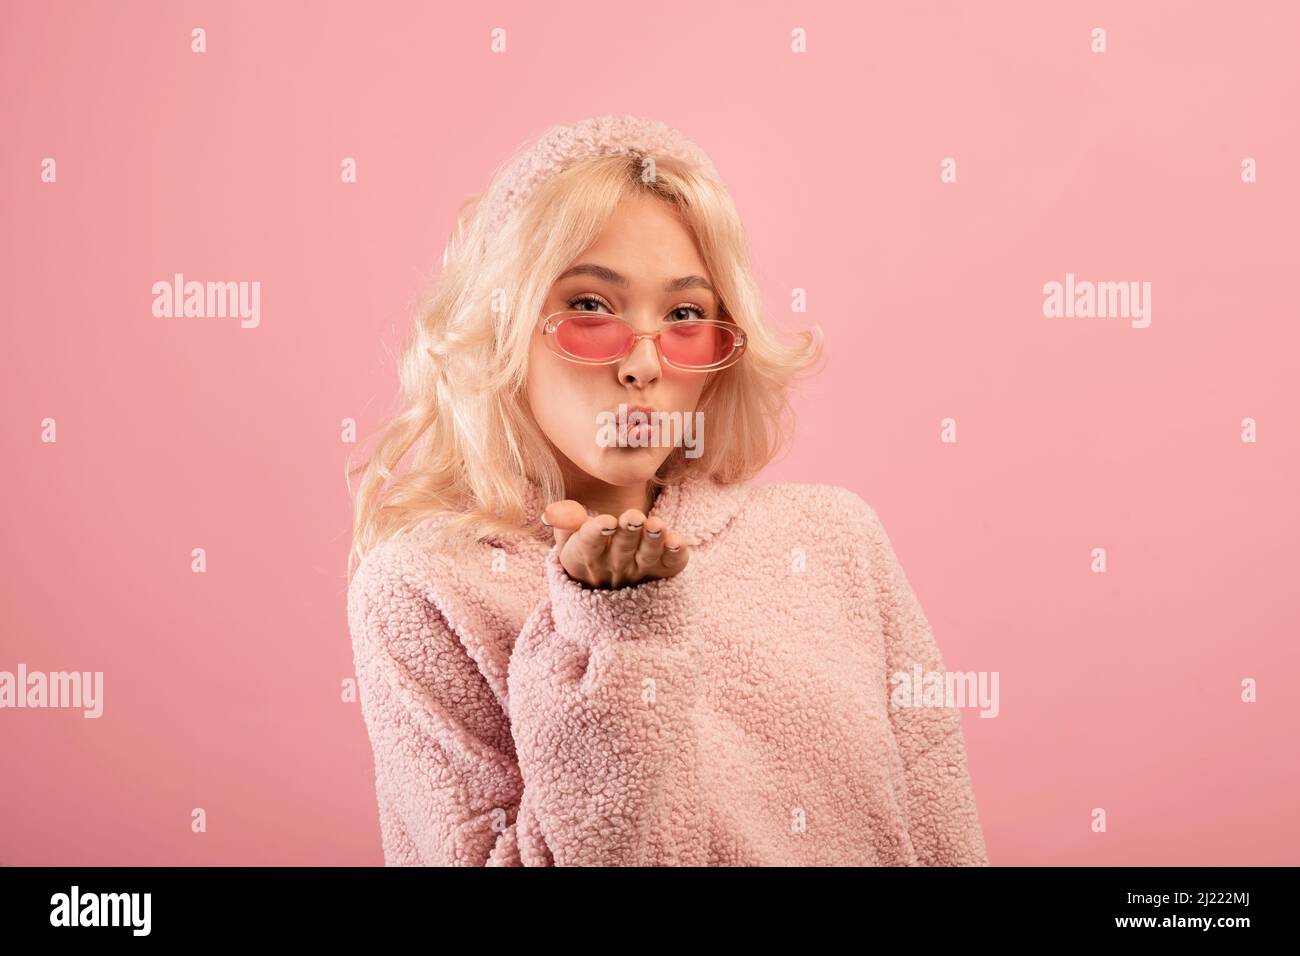 Ziemlich stilvolle Dame weht Luftkuss auf die Kamera, verspielte Frau flirty, Senden ihrer Liebe, rosa Studio-Hintergrund Stockfoto